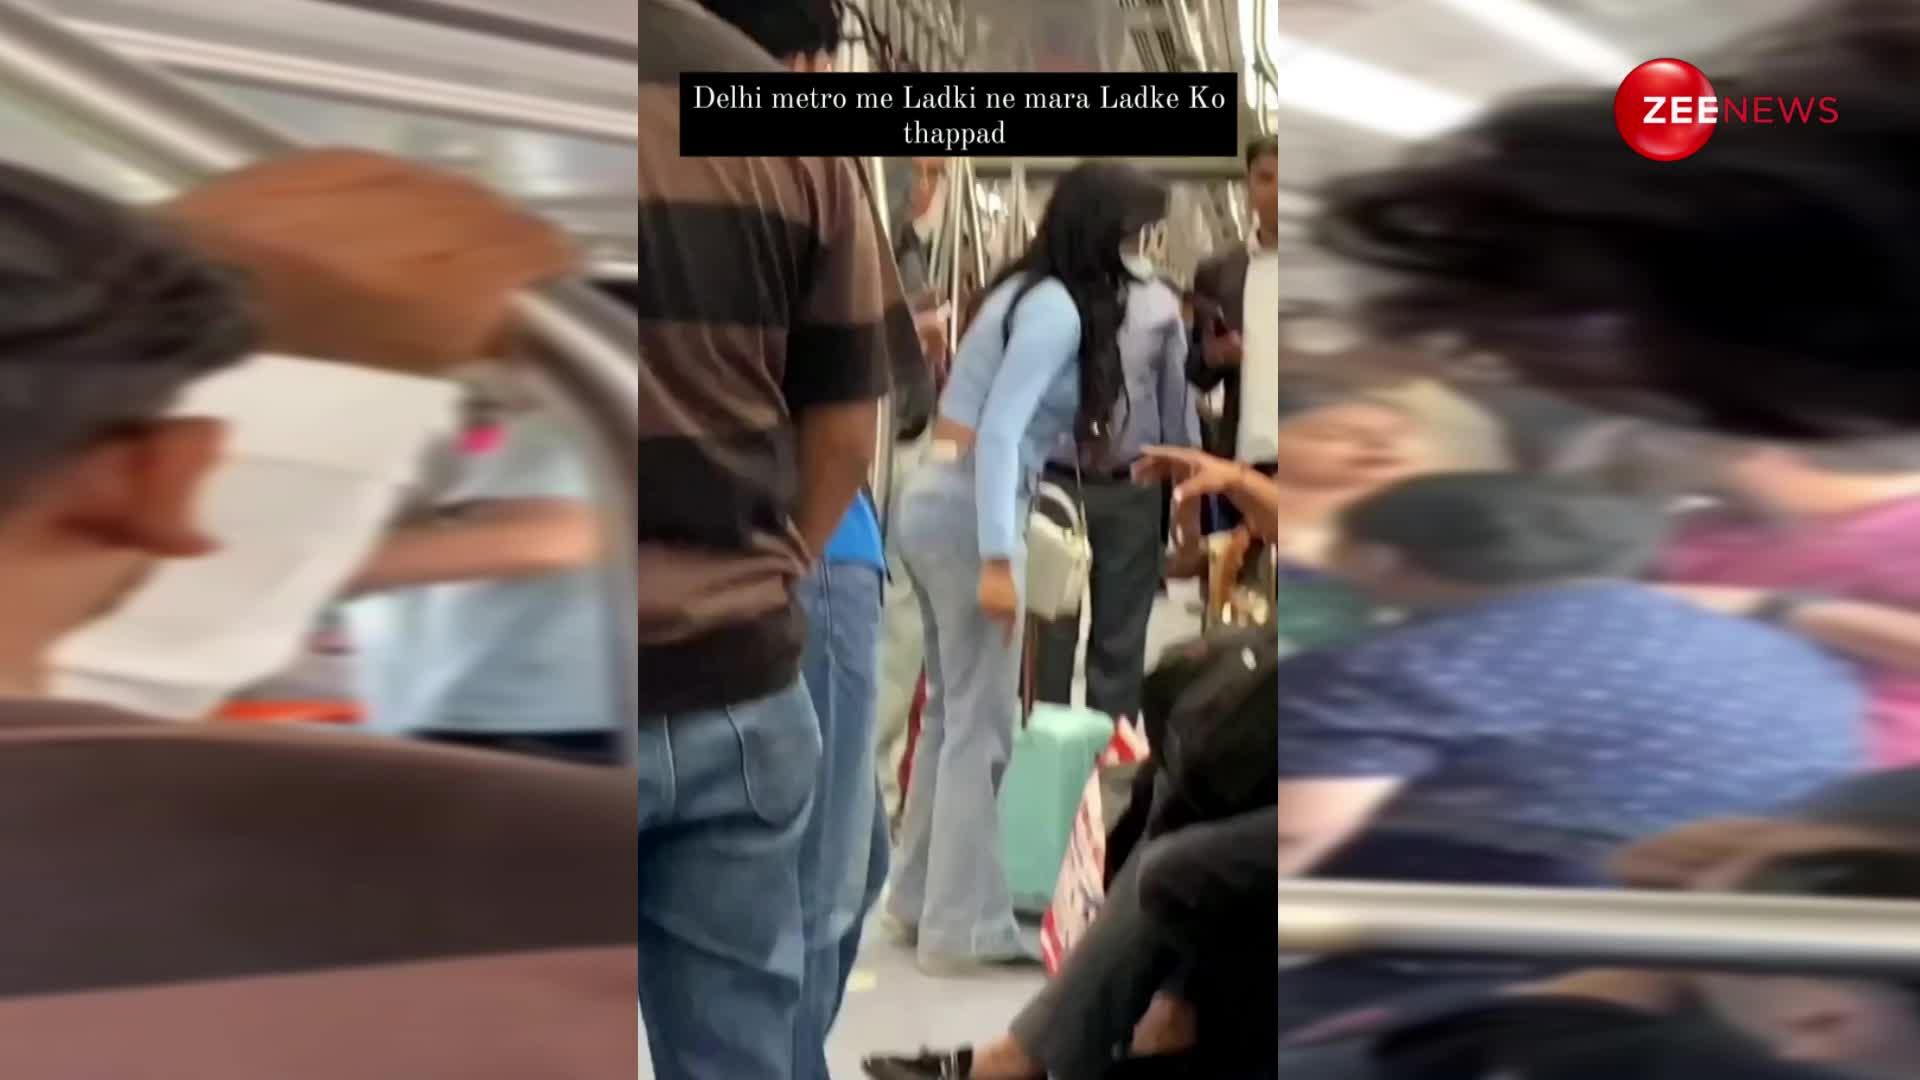 Delhi Metro एक बार फिर ट्रेंड में, लड़की ने मारा लड़के को थप्पड़, लोग देखते रहे तमाशा